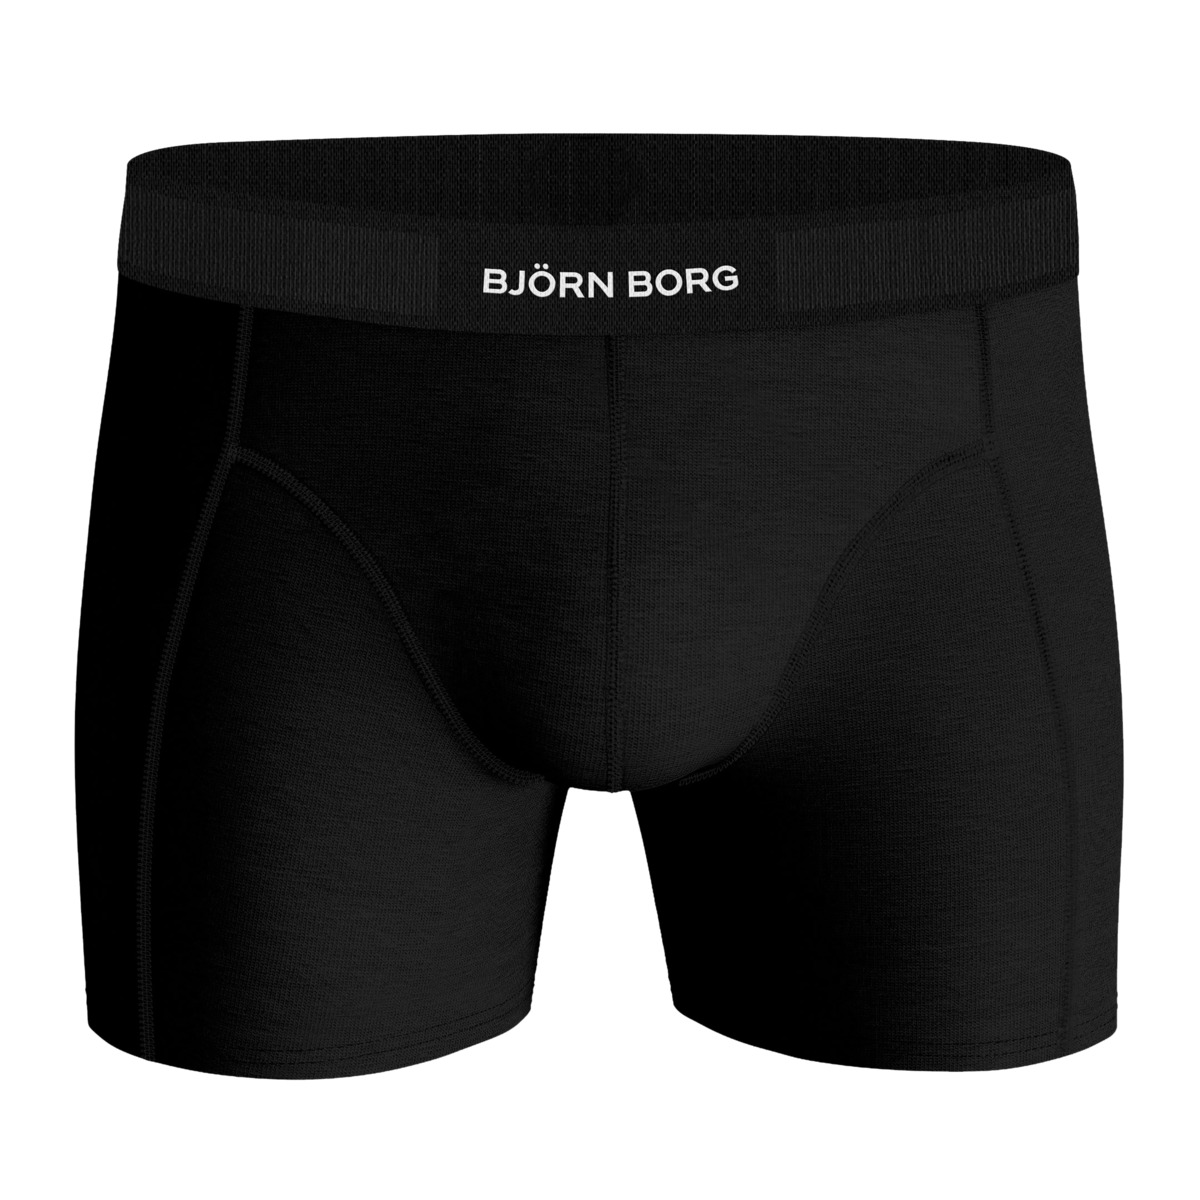 Björn Borg Premium Cotton Stretch Boxer 3er Pack Boxershorts schwarz